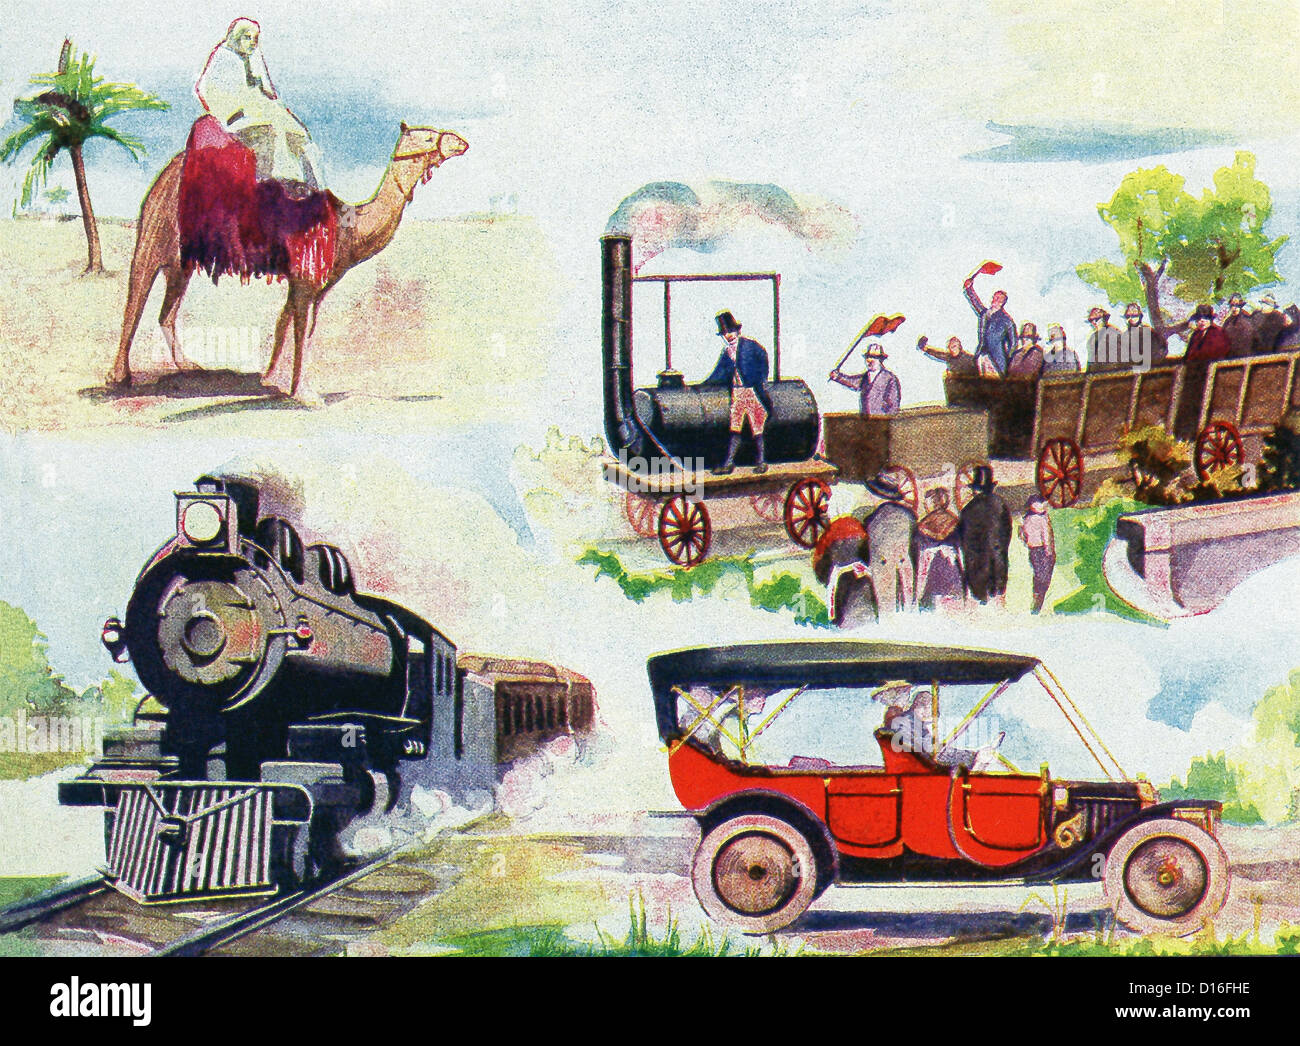 Trasporti terrestri: Camel nave del deserto, il primo convoglio ferroviario in Inghilterra 1825, moderno treno ferroviario, automobile. Foto Stock